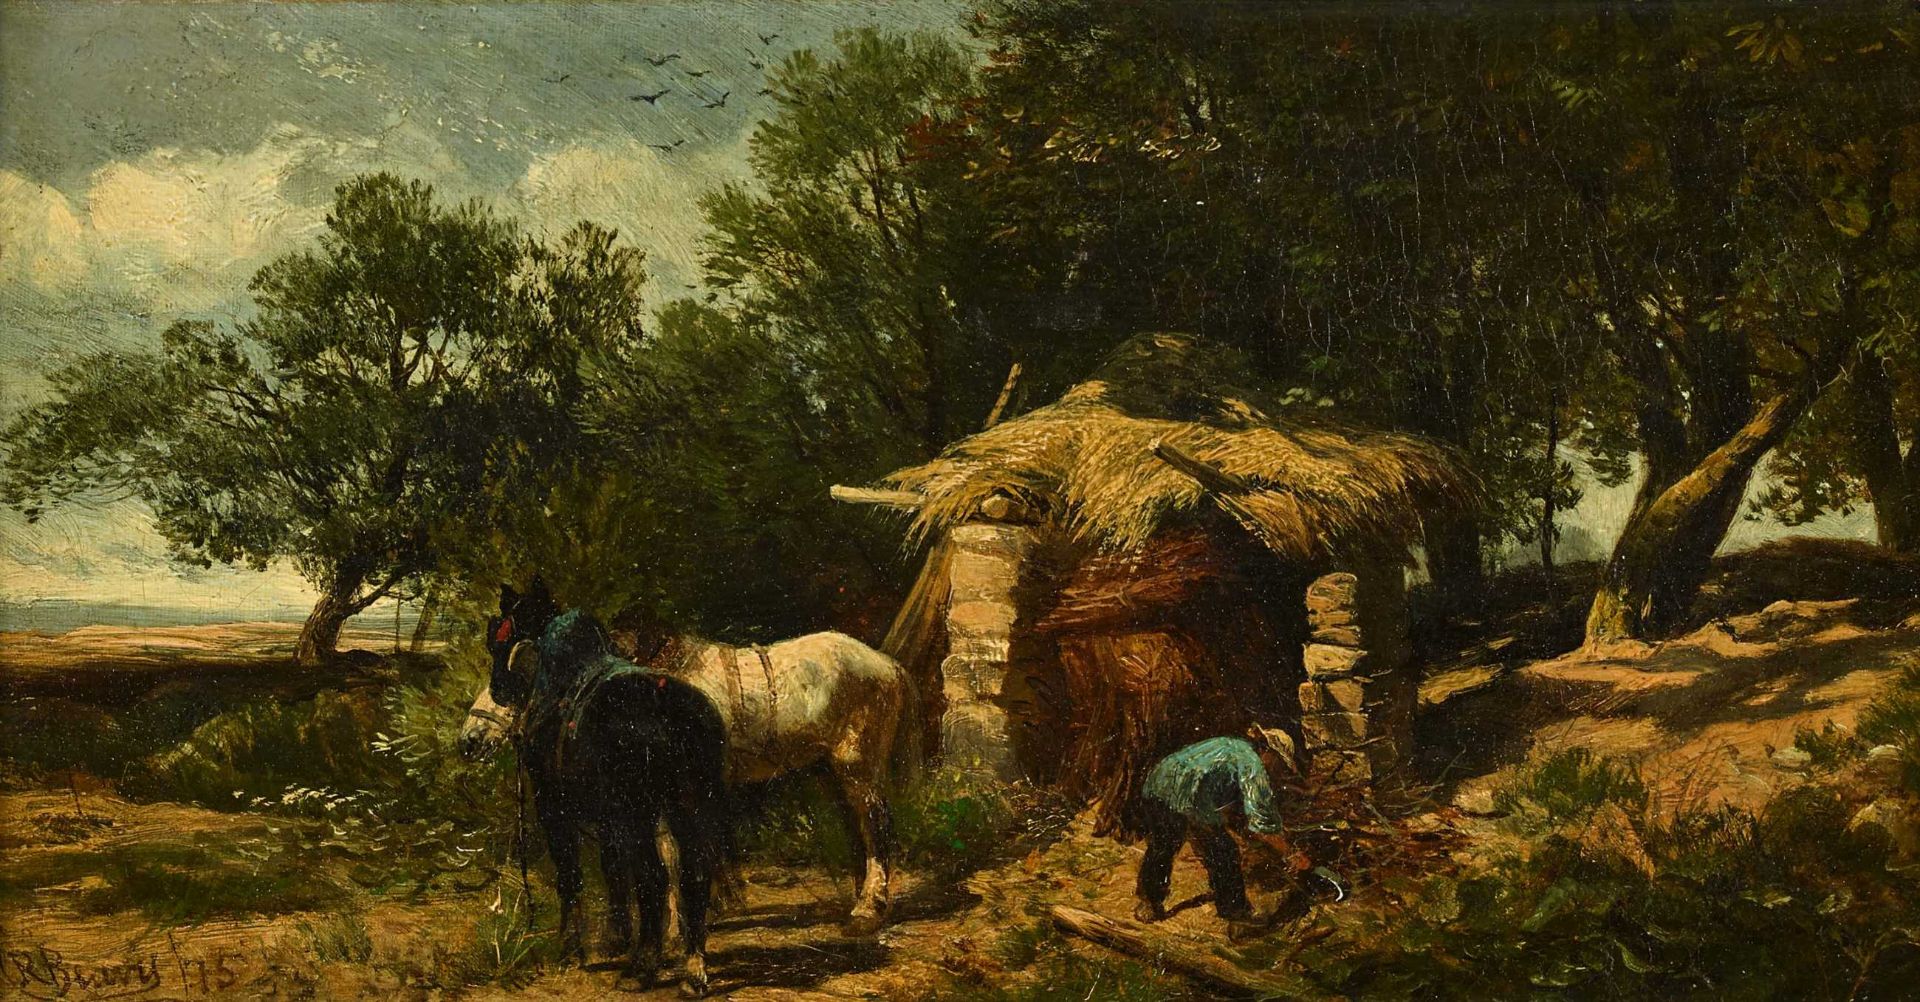 BEAVIS, RICHARDExmouth 1824 - 1896 LondonBaumgruppe mit Bauer, Pferden und Hütte.Öl auf Leinwand,